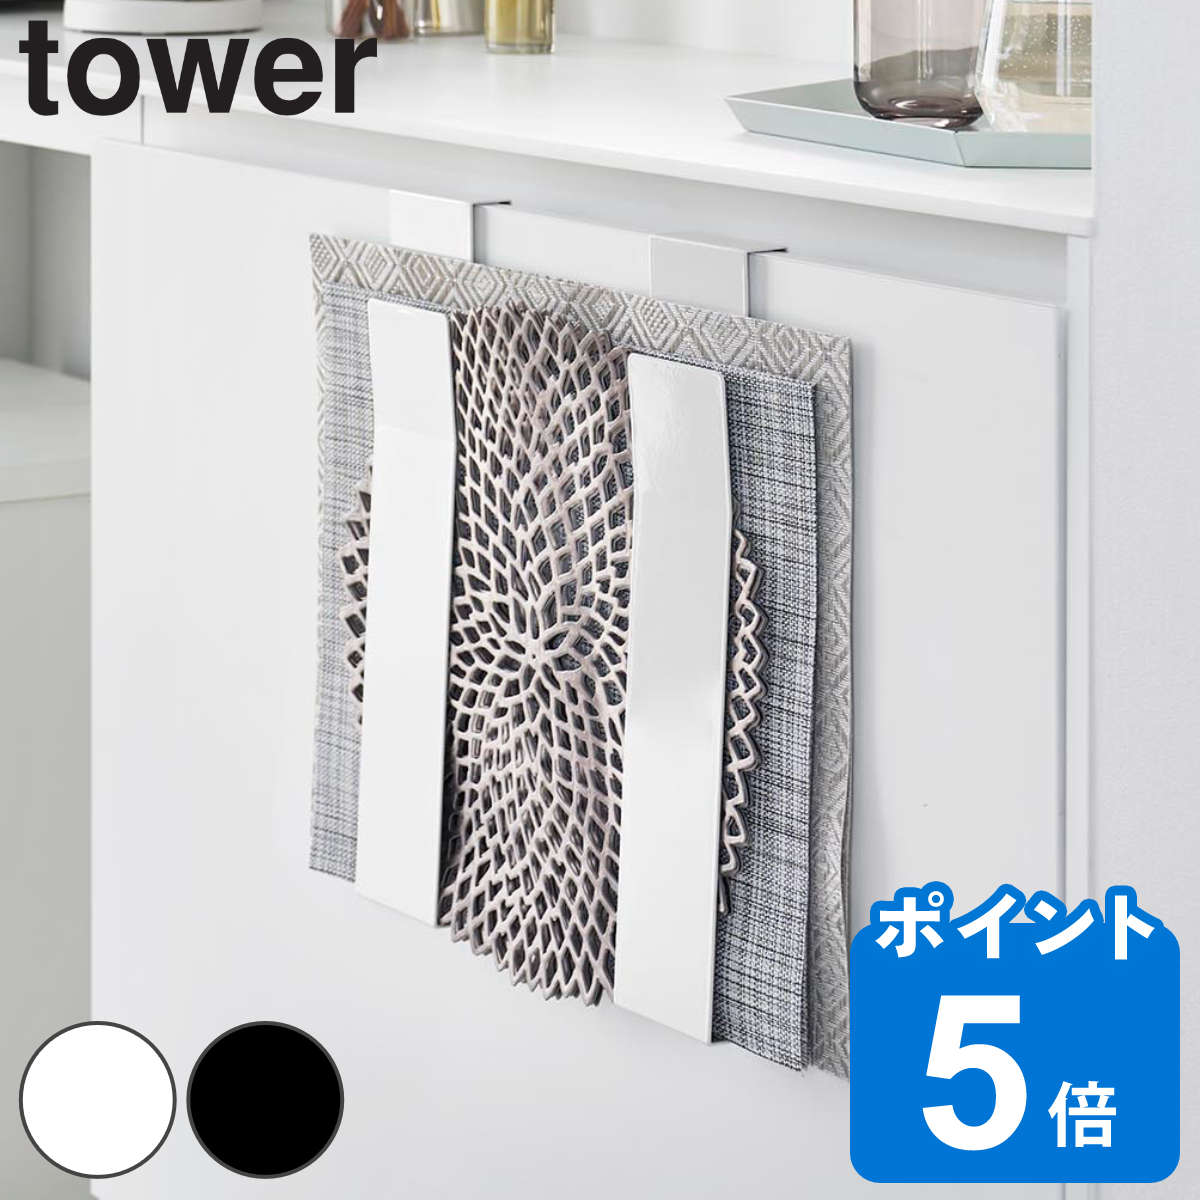 山崎実業 tower 扉に掛けるランチョンマット収納 タワー